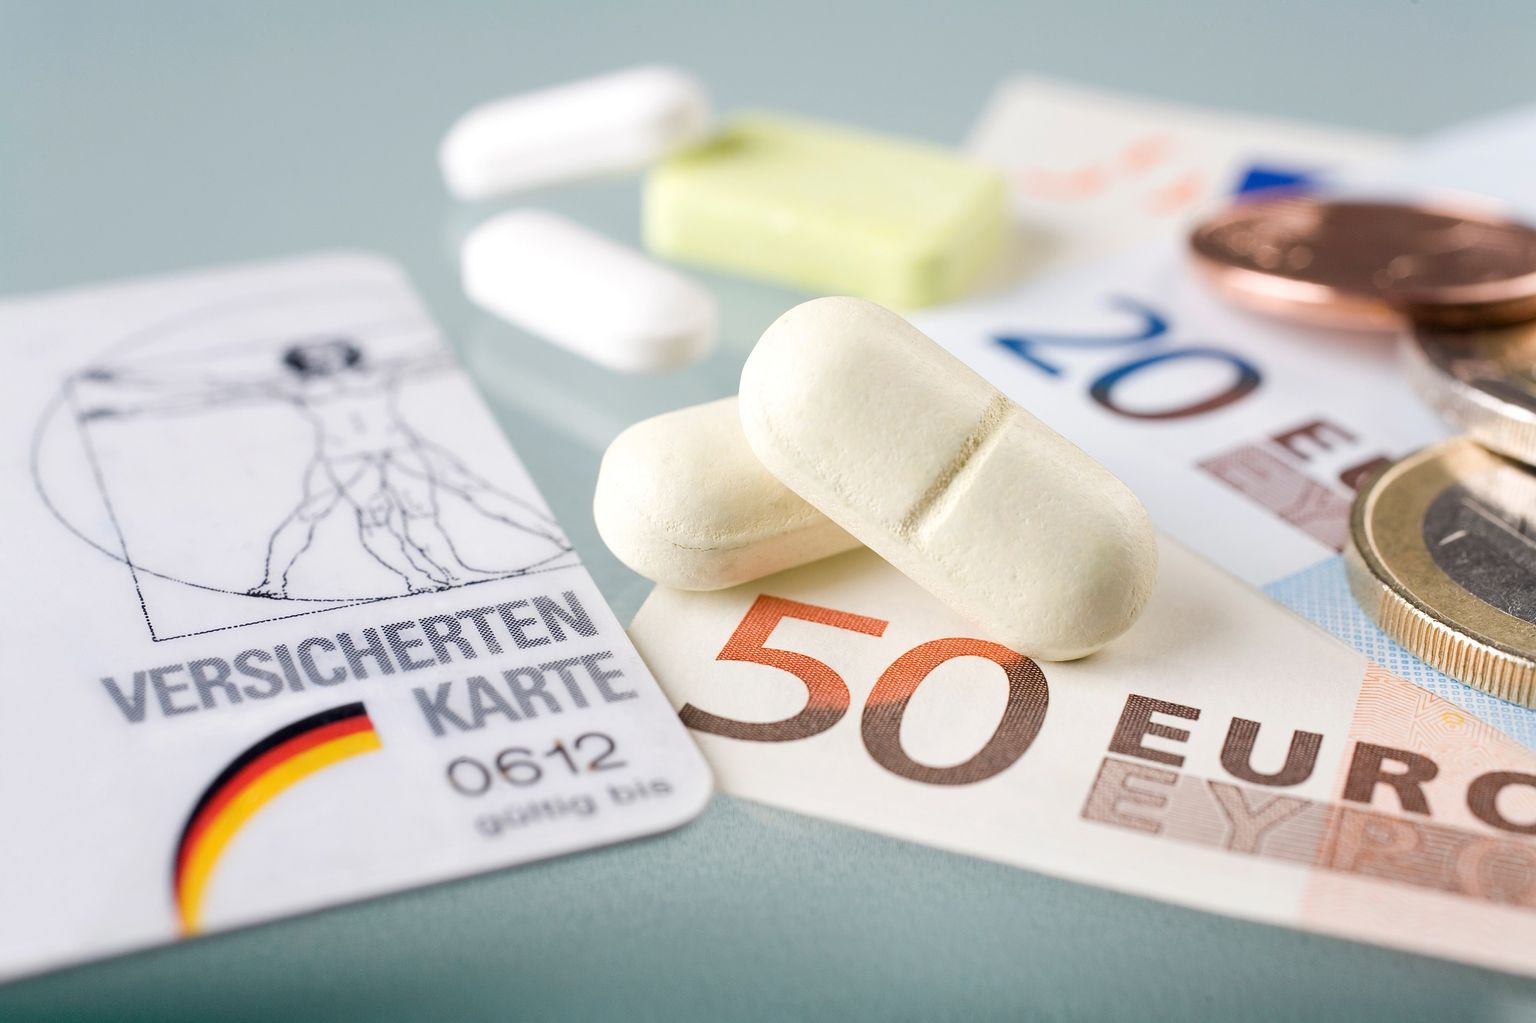 Een close-up van een verzekerde kaart uit Duitsland, contant geld en medicijnen.